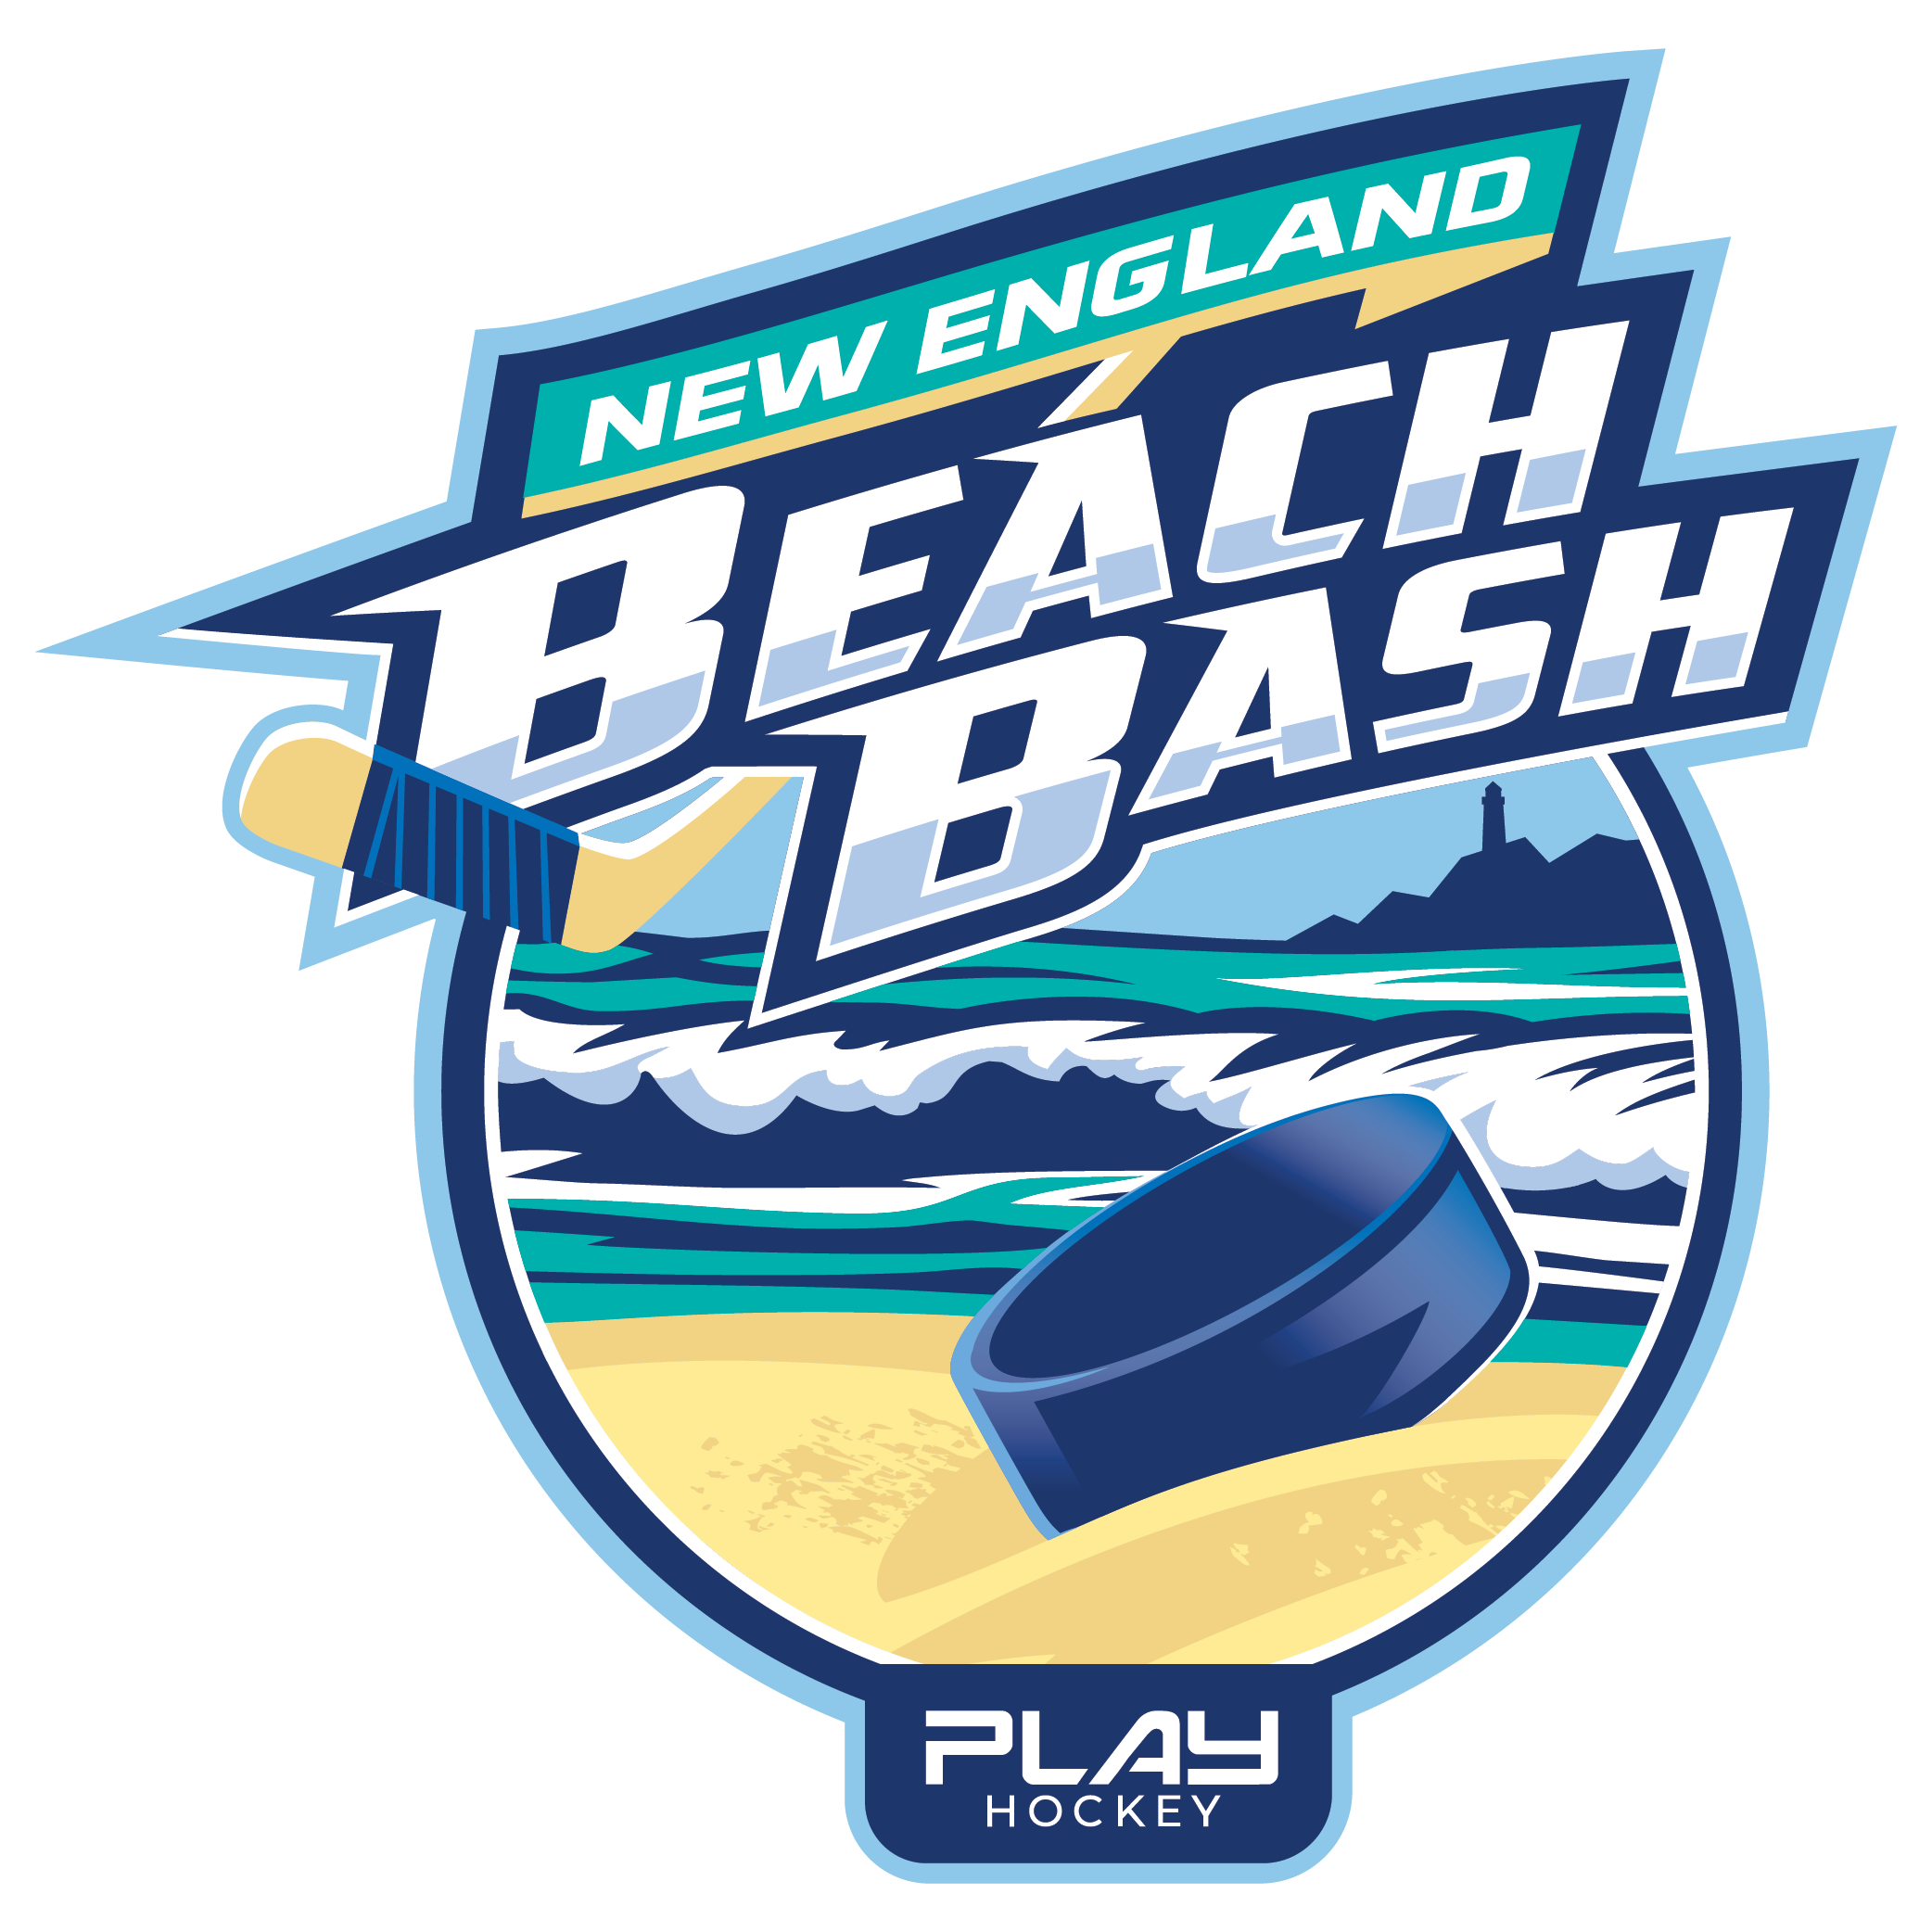 New England Beach Bash